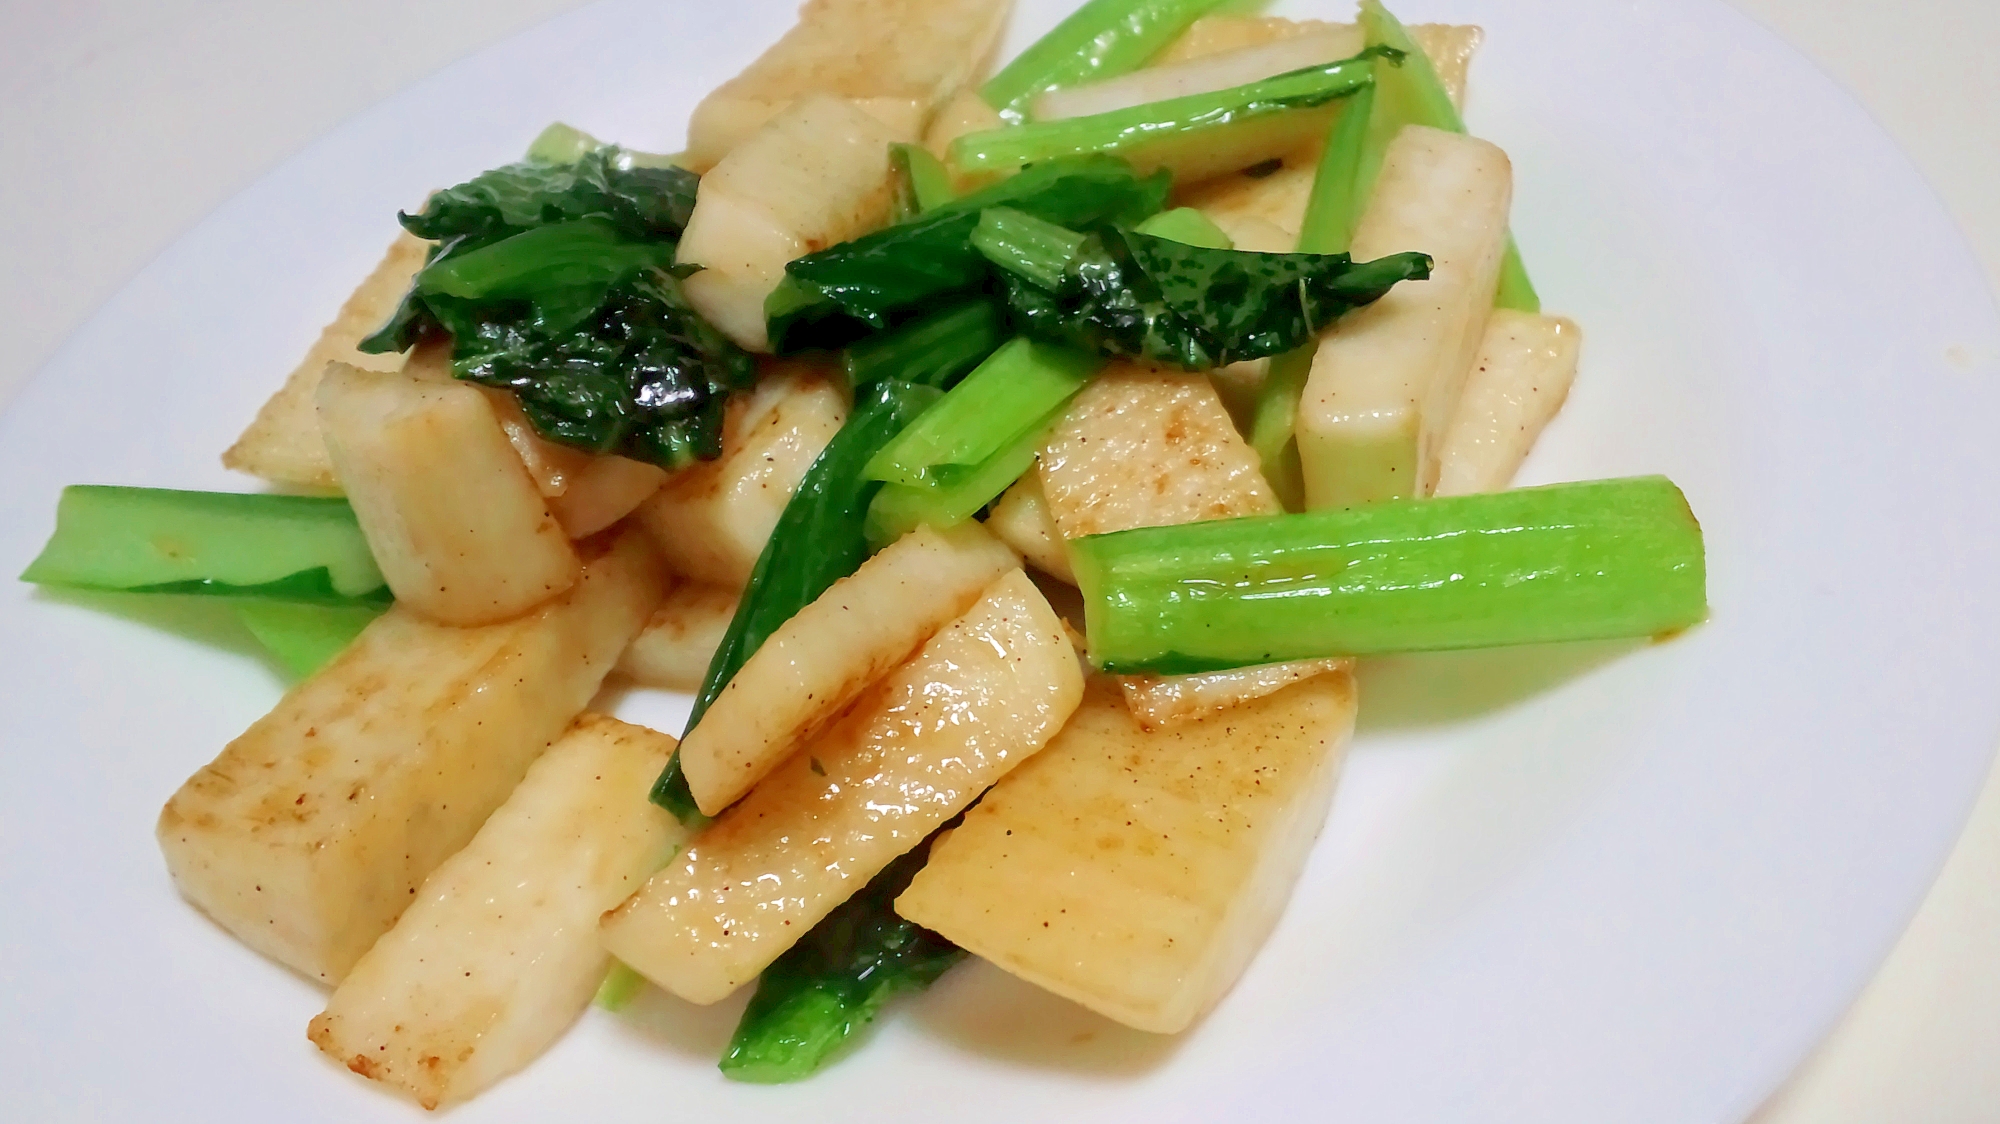 長いもと小松菜の炒め物